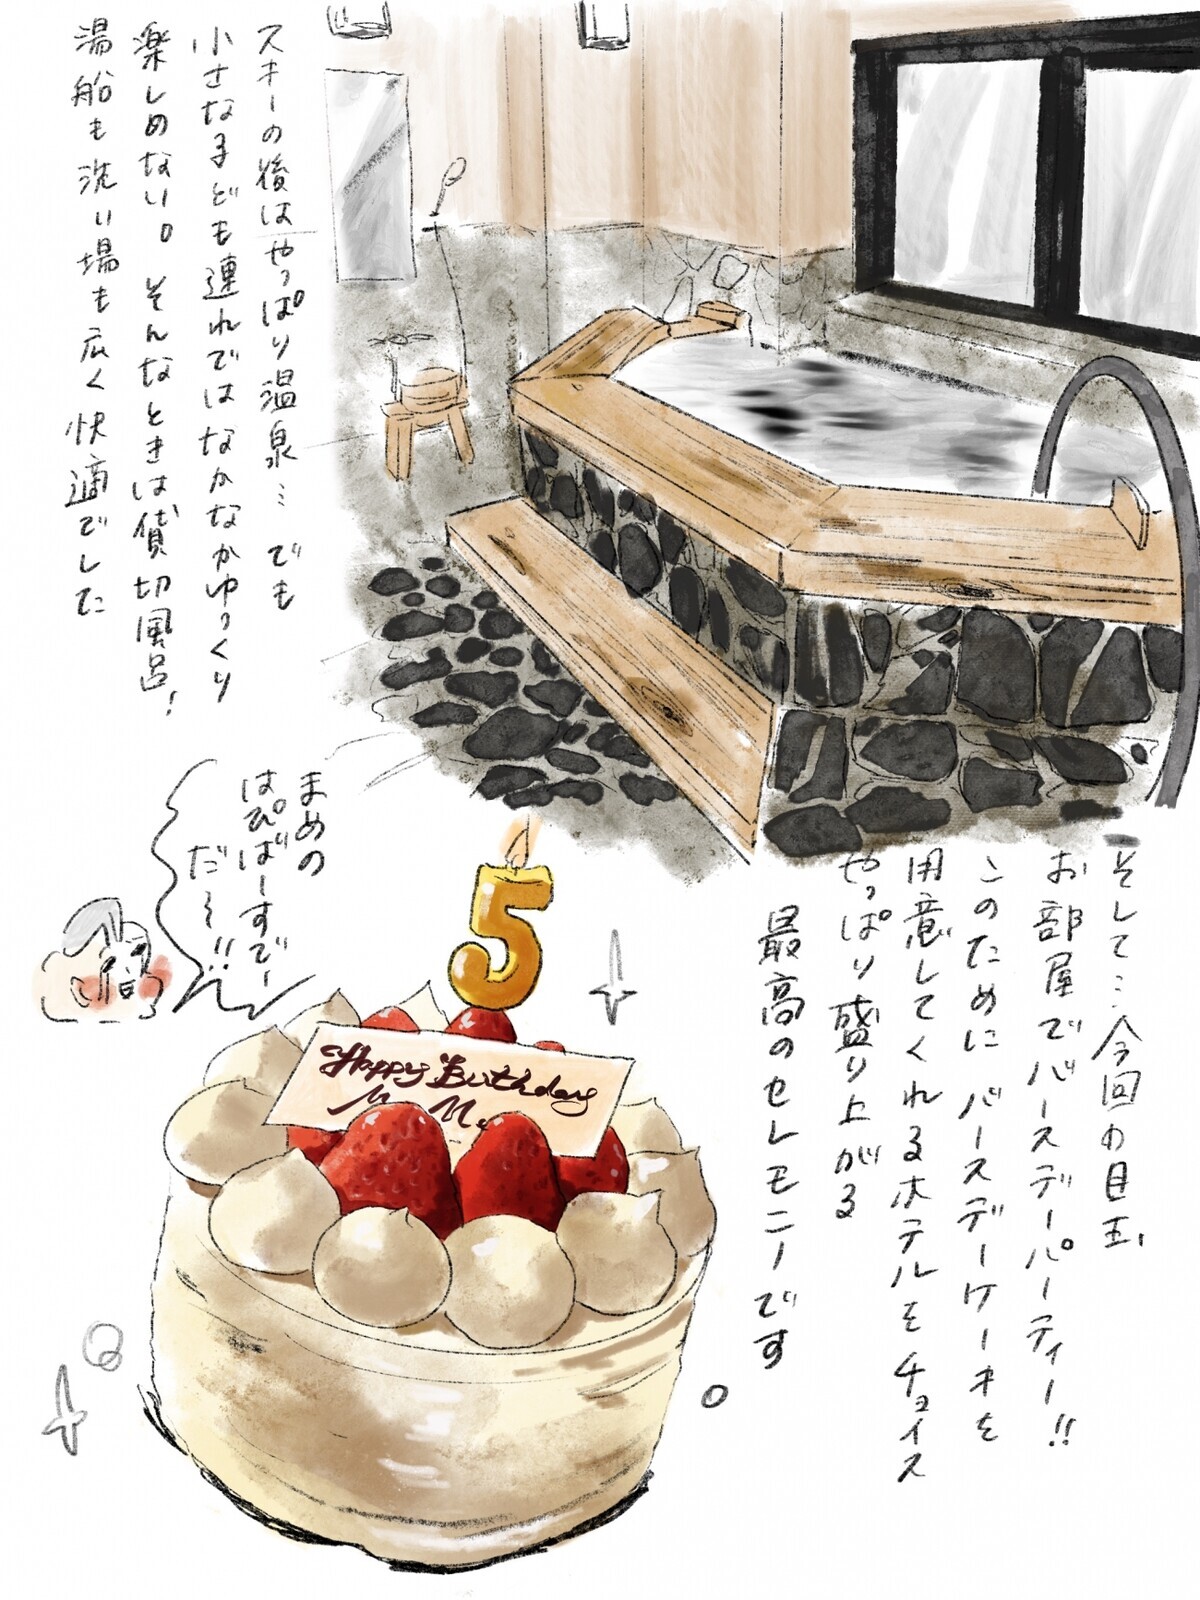 【子連れで湯沢にスキー旅行】サプライズケーキはやっぱり盛り上がる【横峰沙弥香の「まめあるき」 Vol.13】